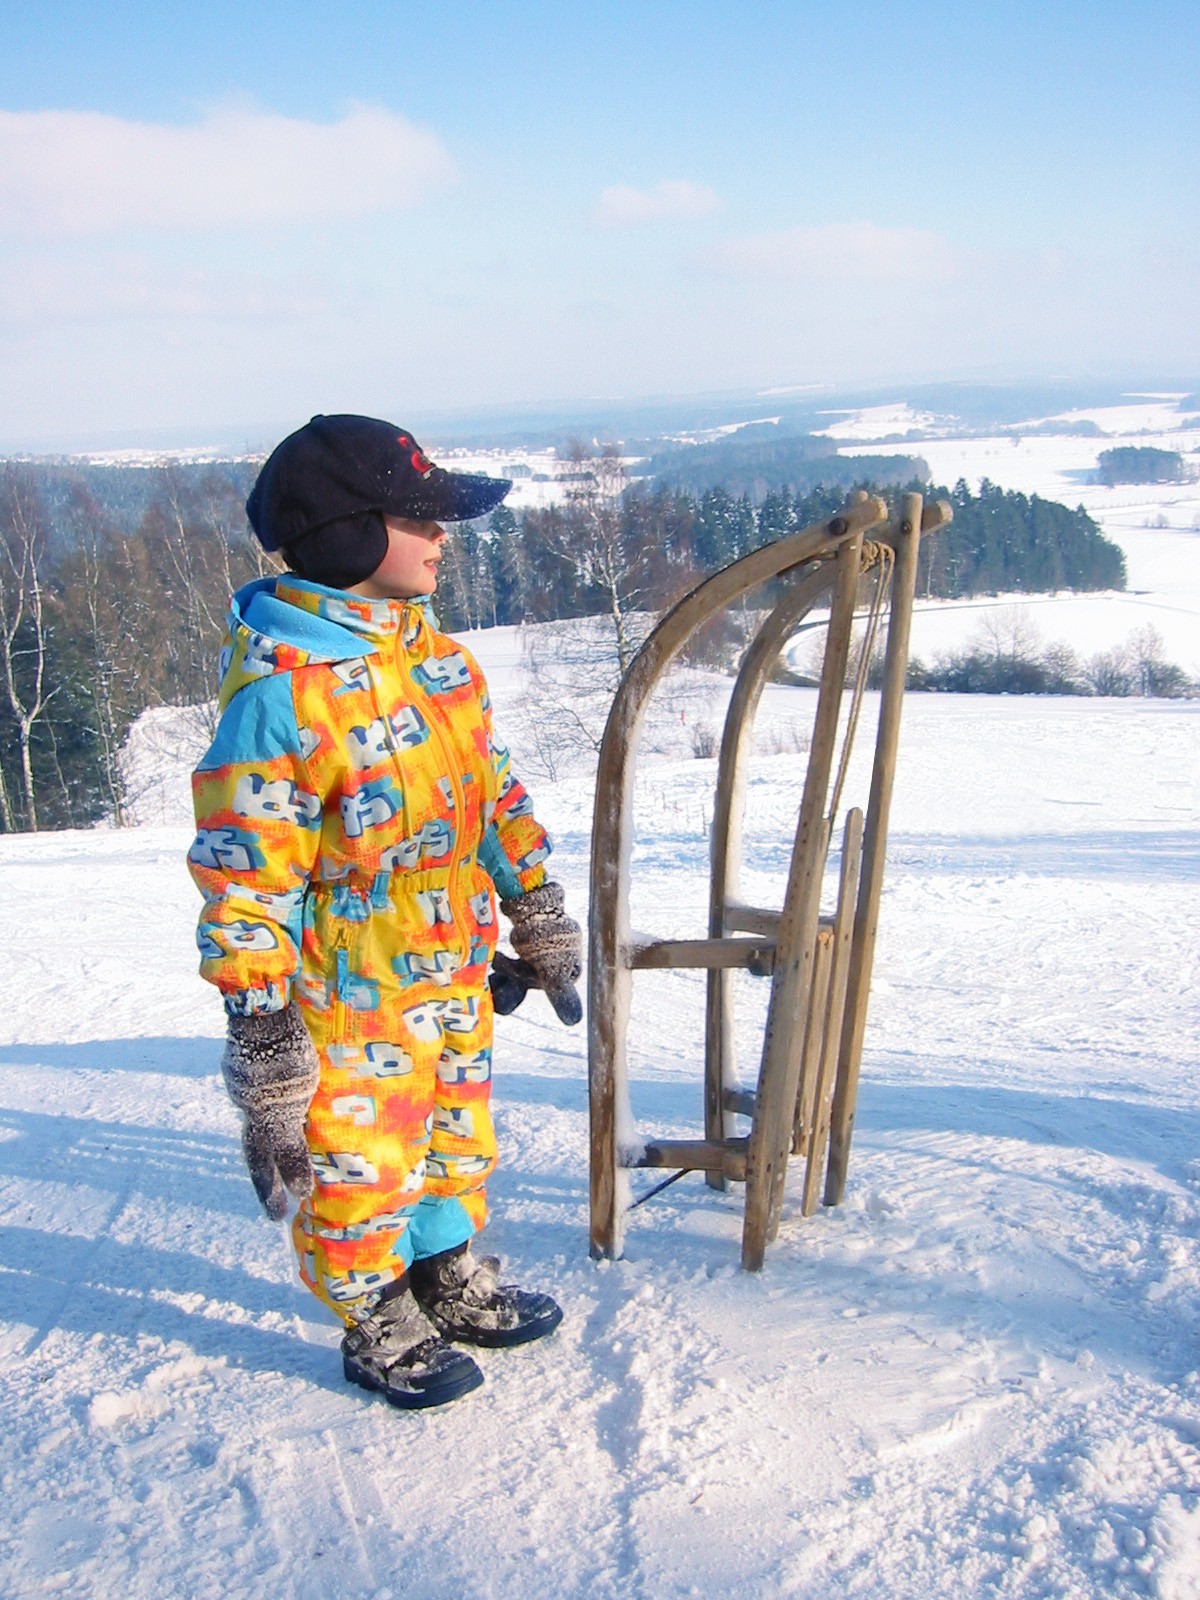 Bild: Ein kleiner Junge im gelben Schneeanzug, der vor seinem Schlitten im Winter steht.